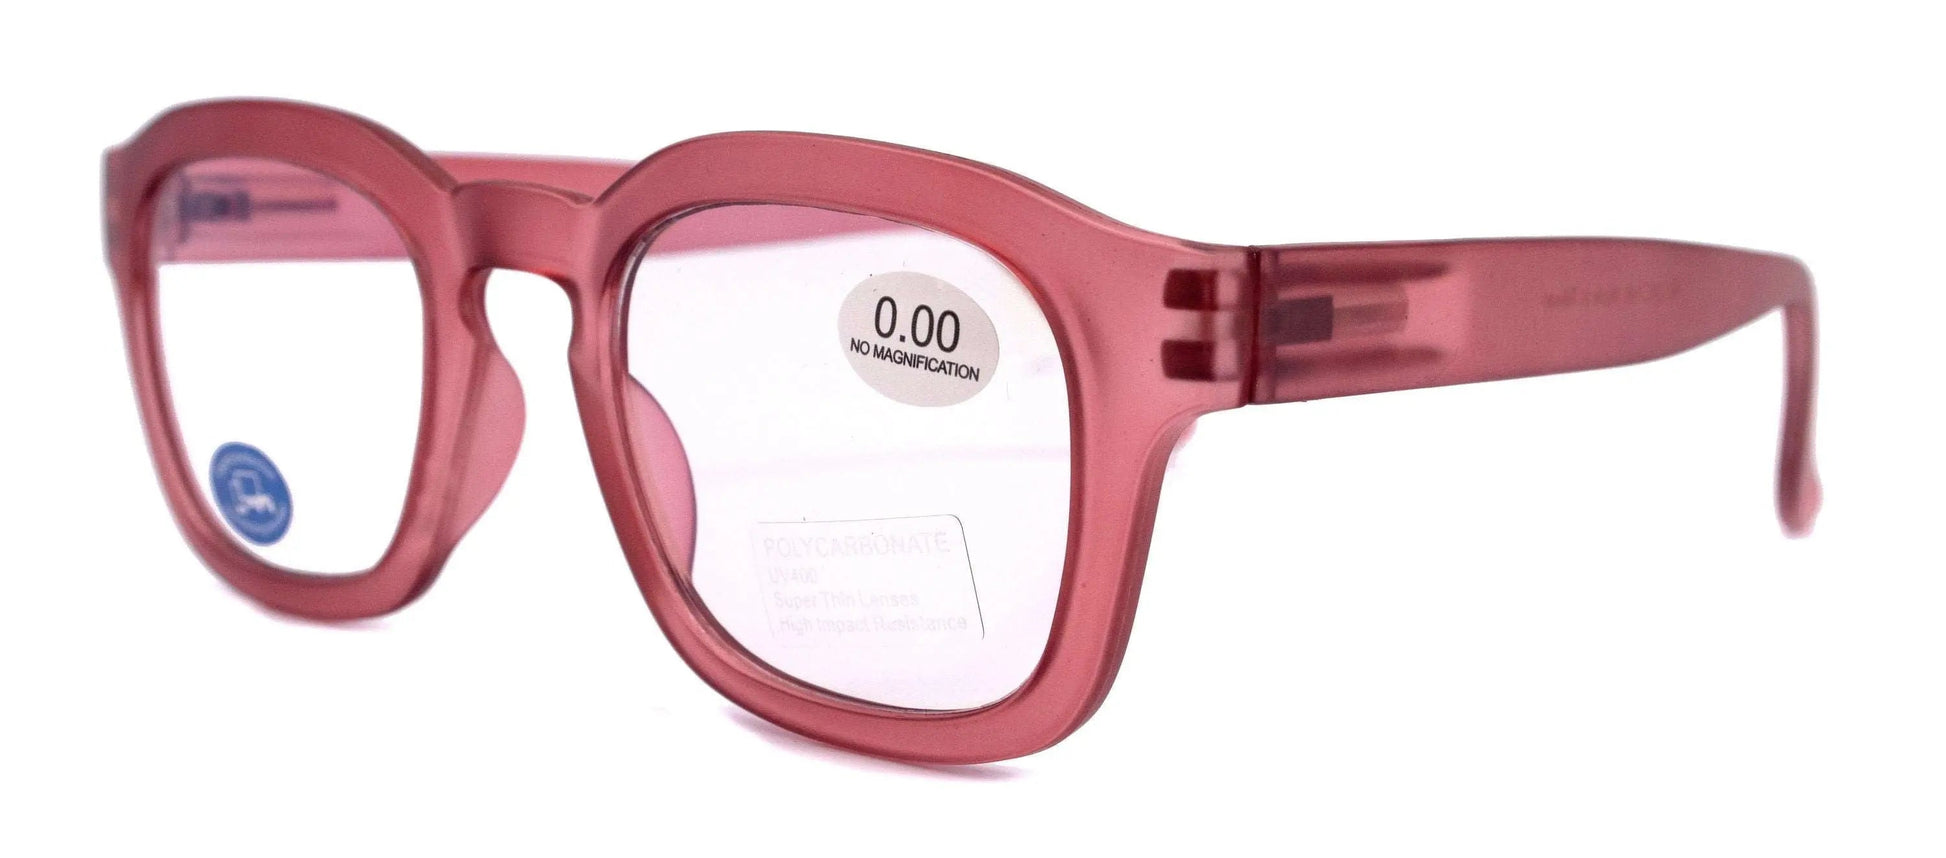 Apollo, (Blue Light Glasses) AR Coating (Anti Glare) (Translucent Pink) Reading Glasses, No prescription, Gamers (Square) NY Fifth Avenue 